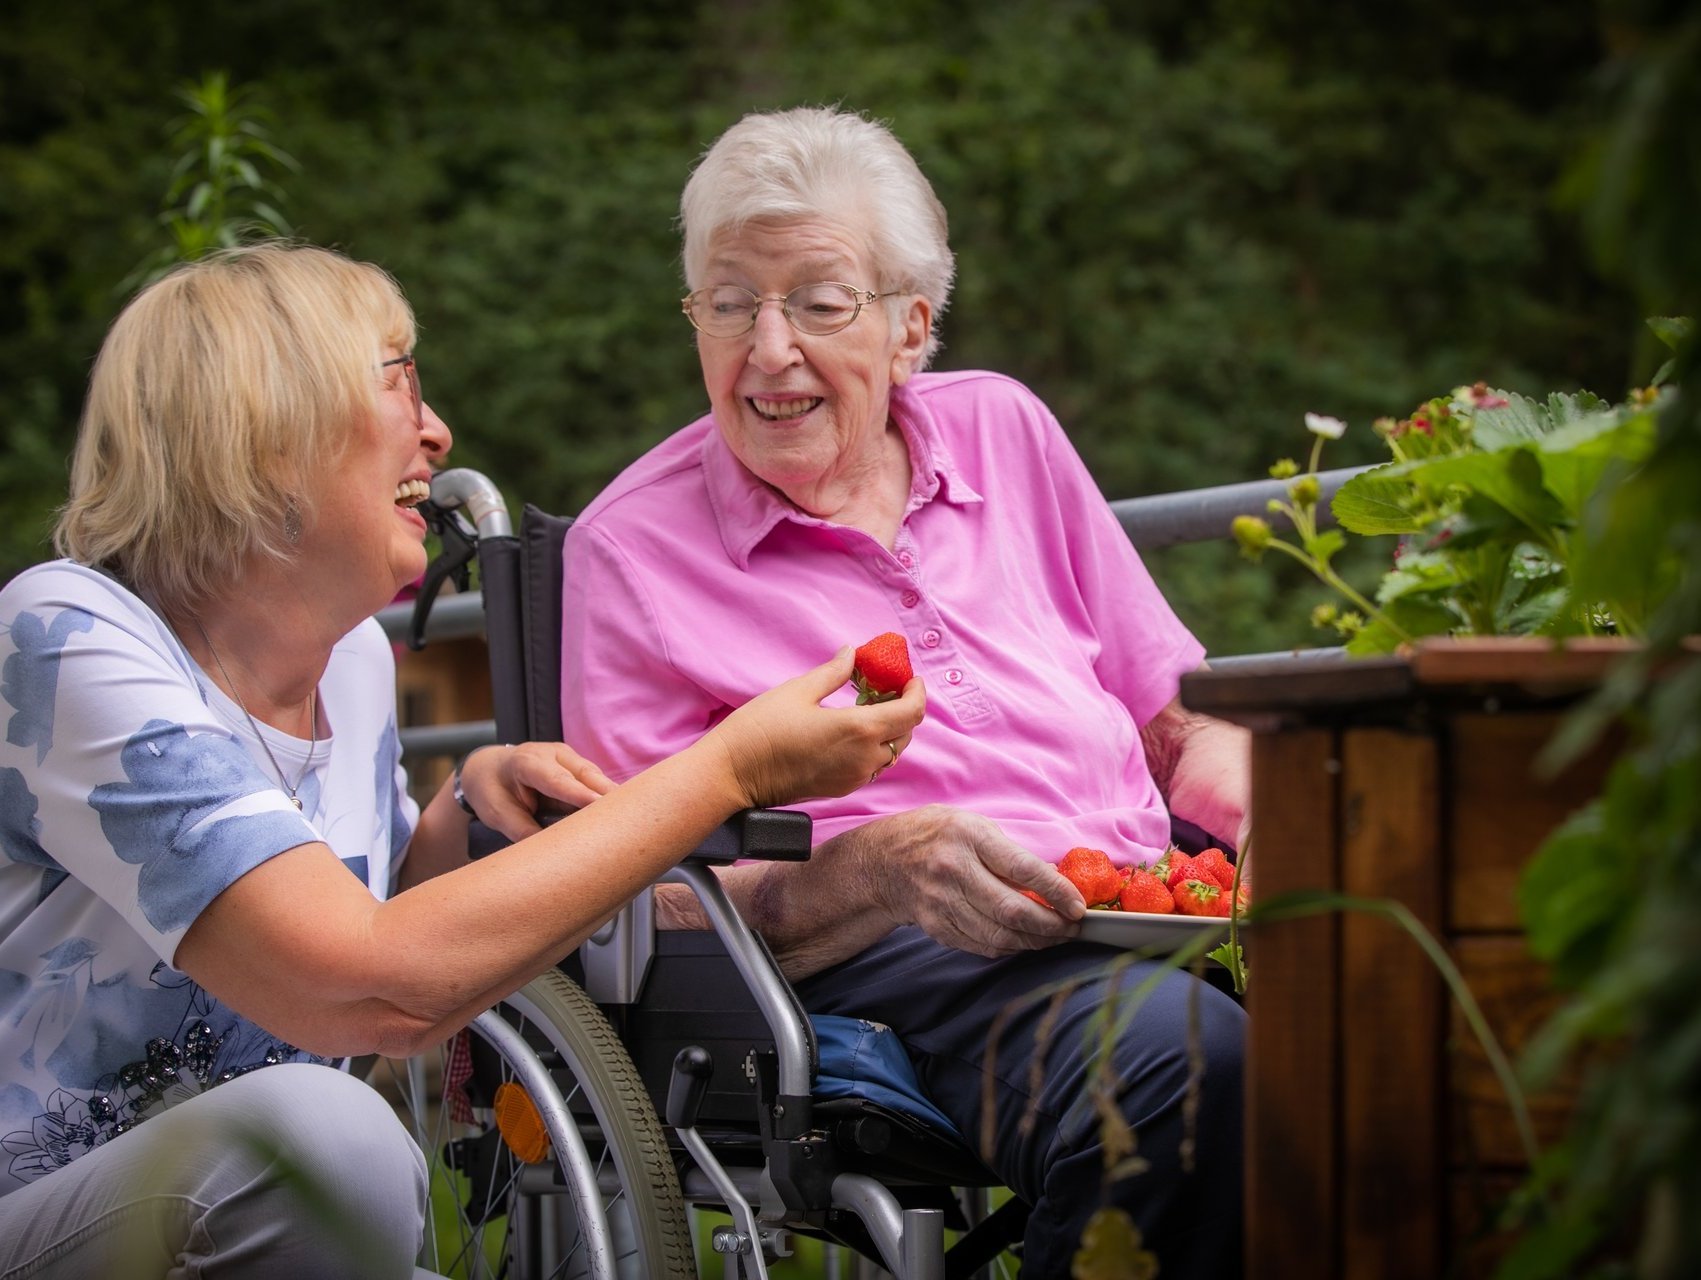 Eine Bewohnerin im Rollstuhl sitzt mit eirner Schale Erdbeeren auf dem Schoß im Garten und neben ihr kniet eine Besucherin und isst Erdbeeren.